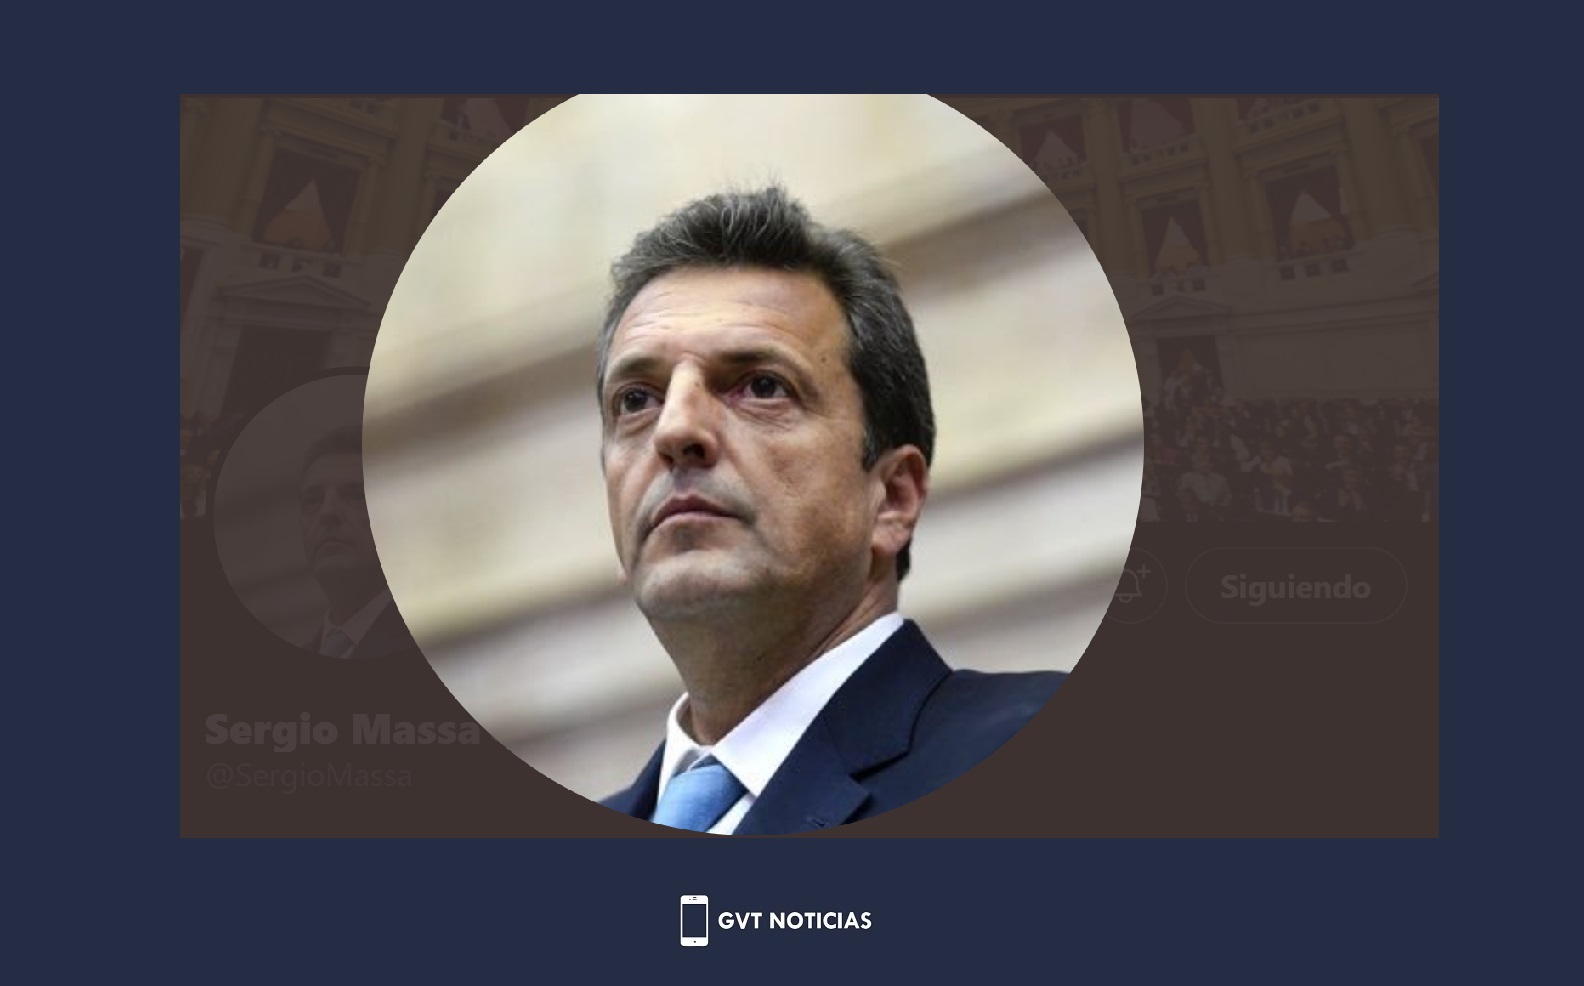 20220728 - Sergio Massa asume como superministro de Economía, Producción y Agricultura